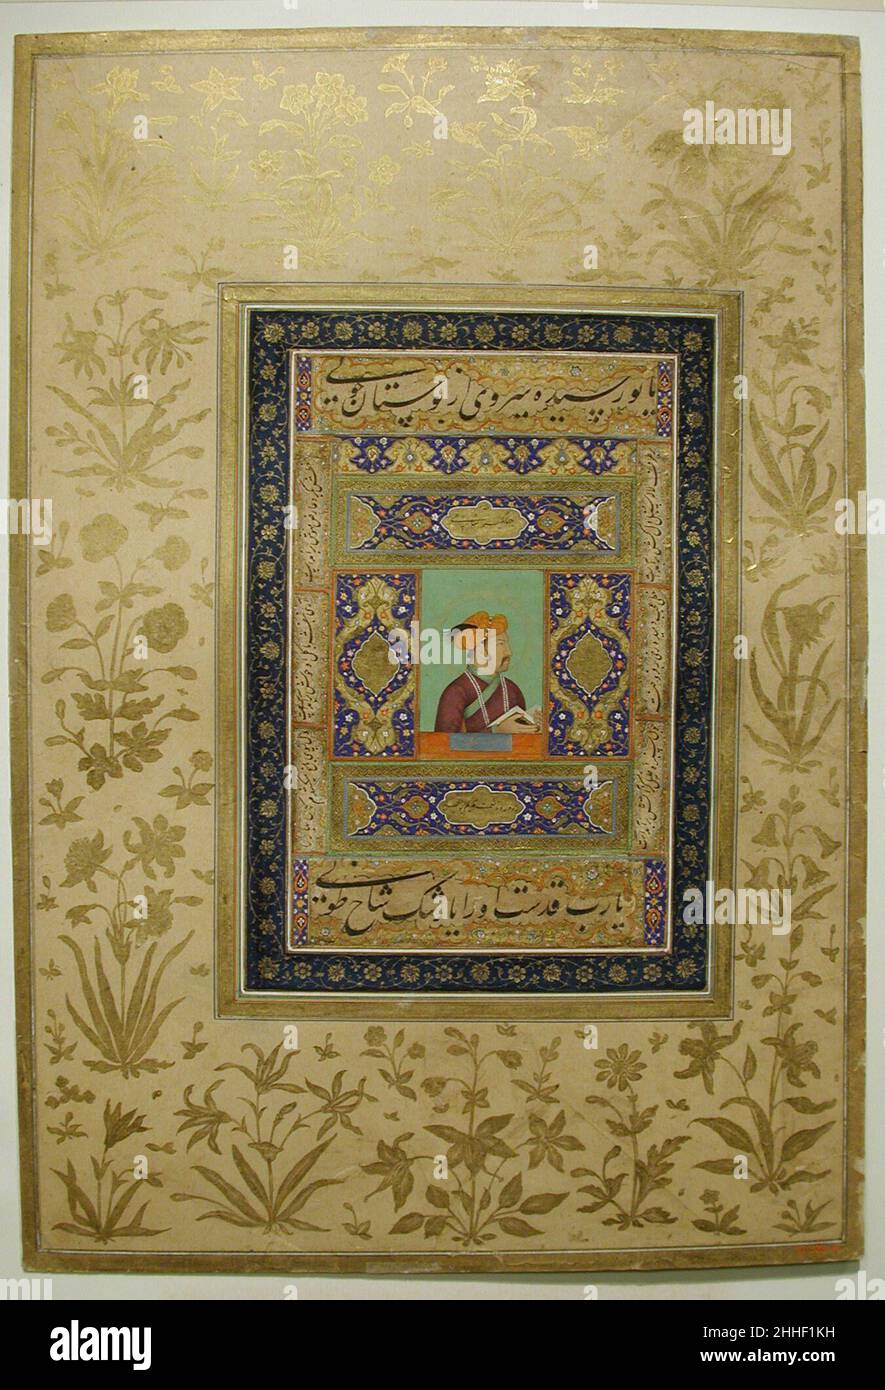 Porträt von Kaiser Jahangir Ca. 1615–20 Jahangir war ein anspruchsvoller Mäzen, der eng mit den Künstlern in seinem Dienst zusammenarbeitete. Der Stil der Portraits, die während seiner Regierungszeit entstanden, änderte sich dramatisch mit dem Zustrom europäischer Drucke nach Indien. Er ließ viele dieser Drucke so genau kopieren, dass die Besucher, die sie mitgebracht hatten, die Originale nicht unterscheiden konnten, und diese Genauigkeitsfreude spiegelt sich in dem Gemälde hier wider. Dieses Porträt ist ein einfaches Abbild und unterscheidet sich im Ton sehr von den allegorischen Porträts von Kaisern, die ebenfalls beliebt waren. Kein Putti kündet den Kaiser aus dem h Stockfoto